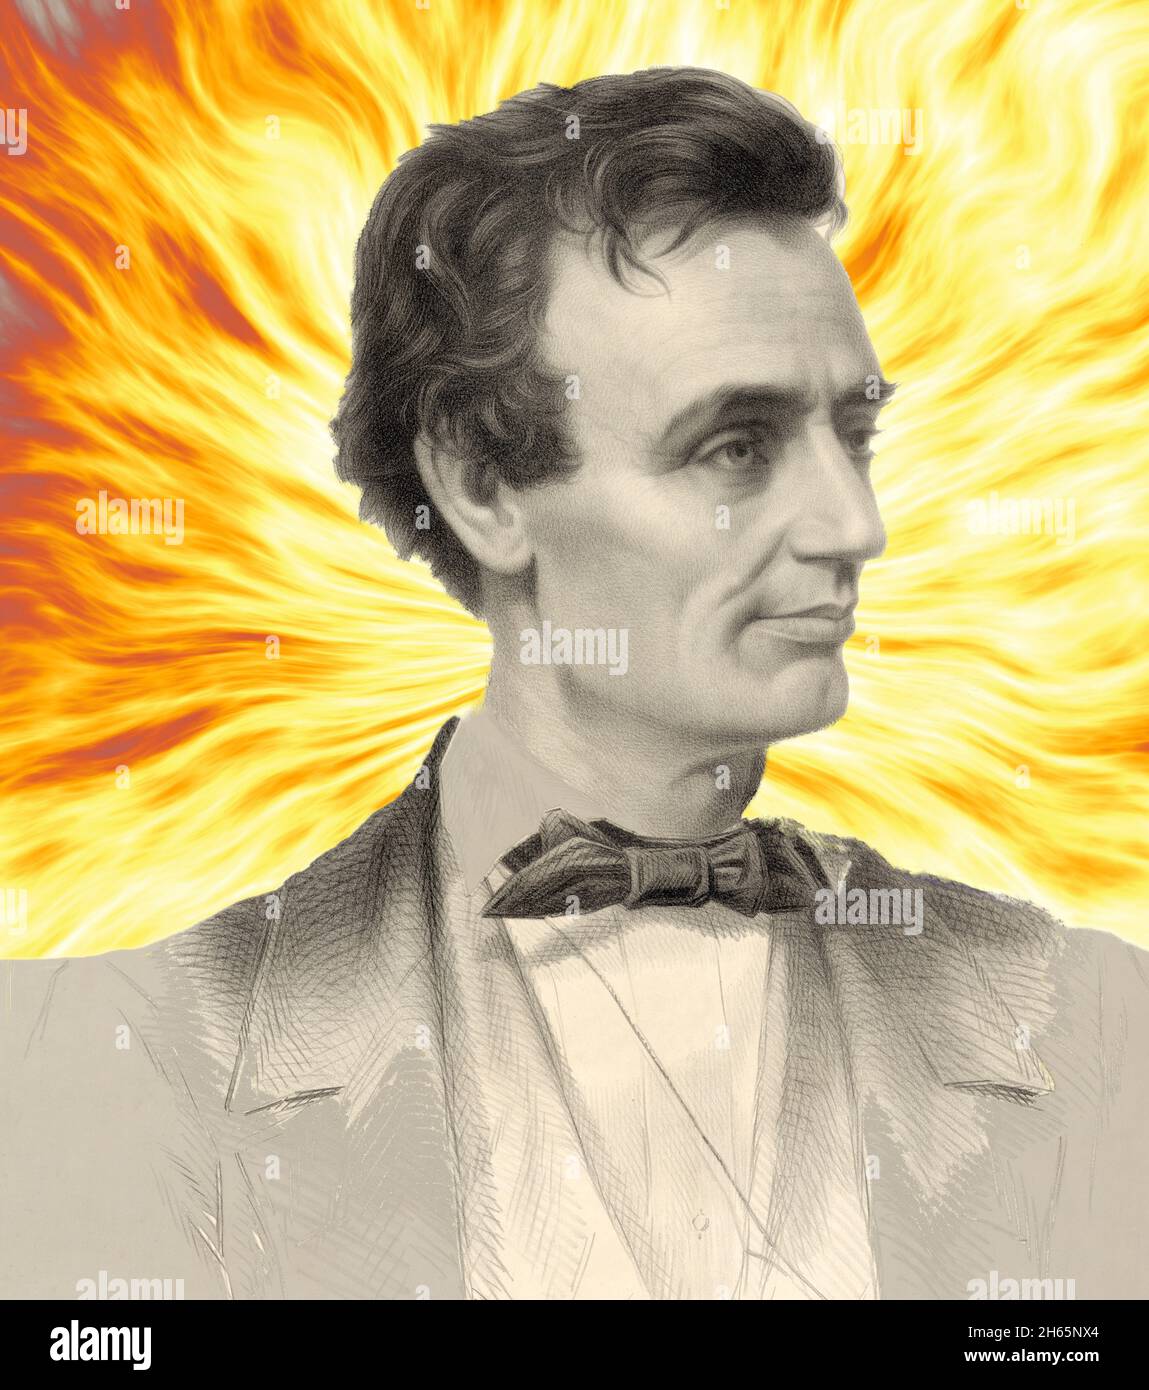 Retrato de un joven Abraham Lincoln sobre un fondo ardiente Foto de stock